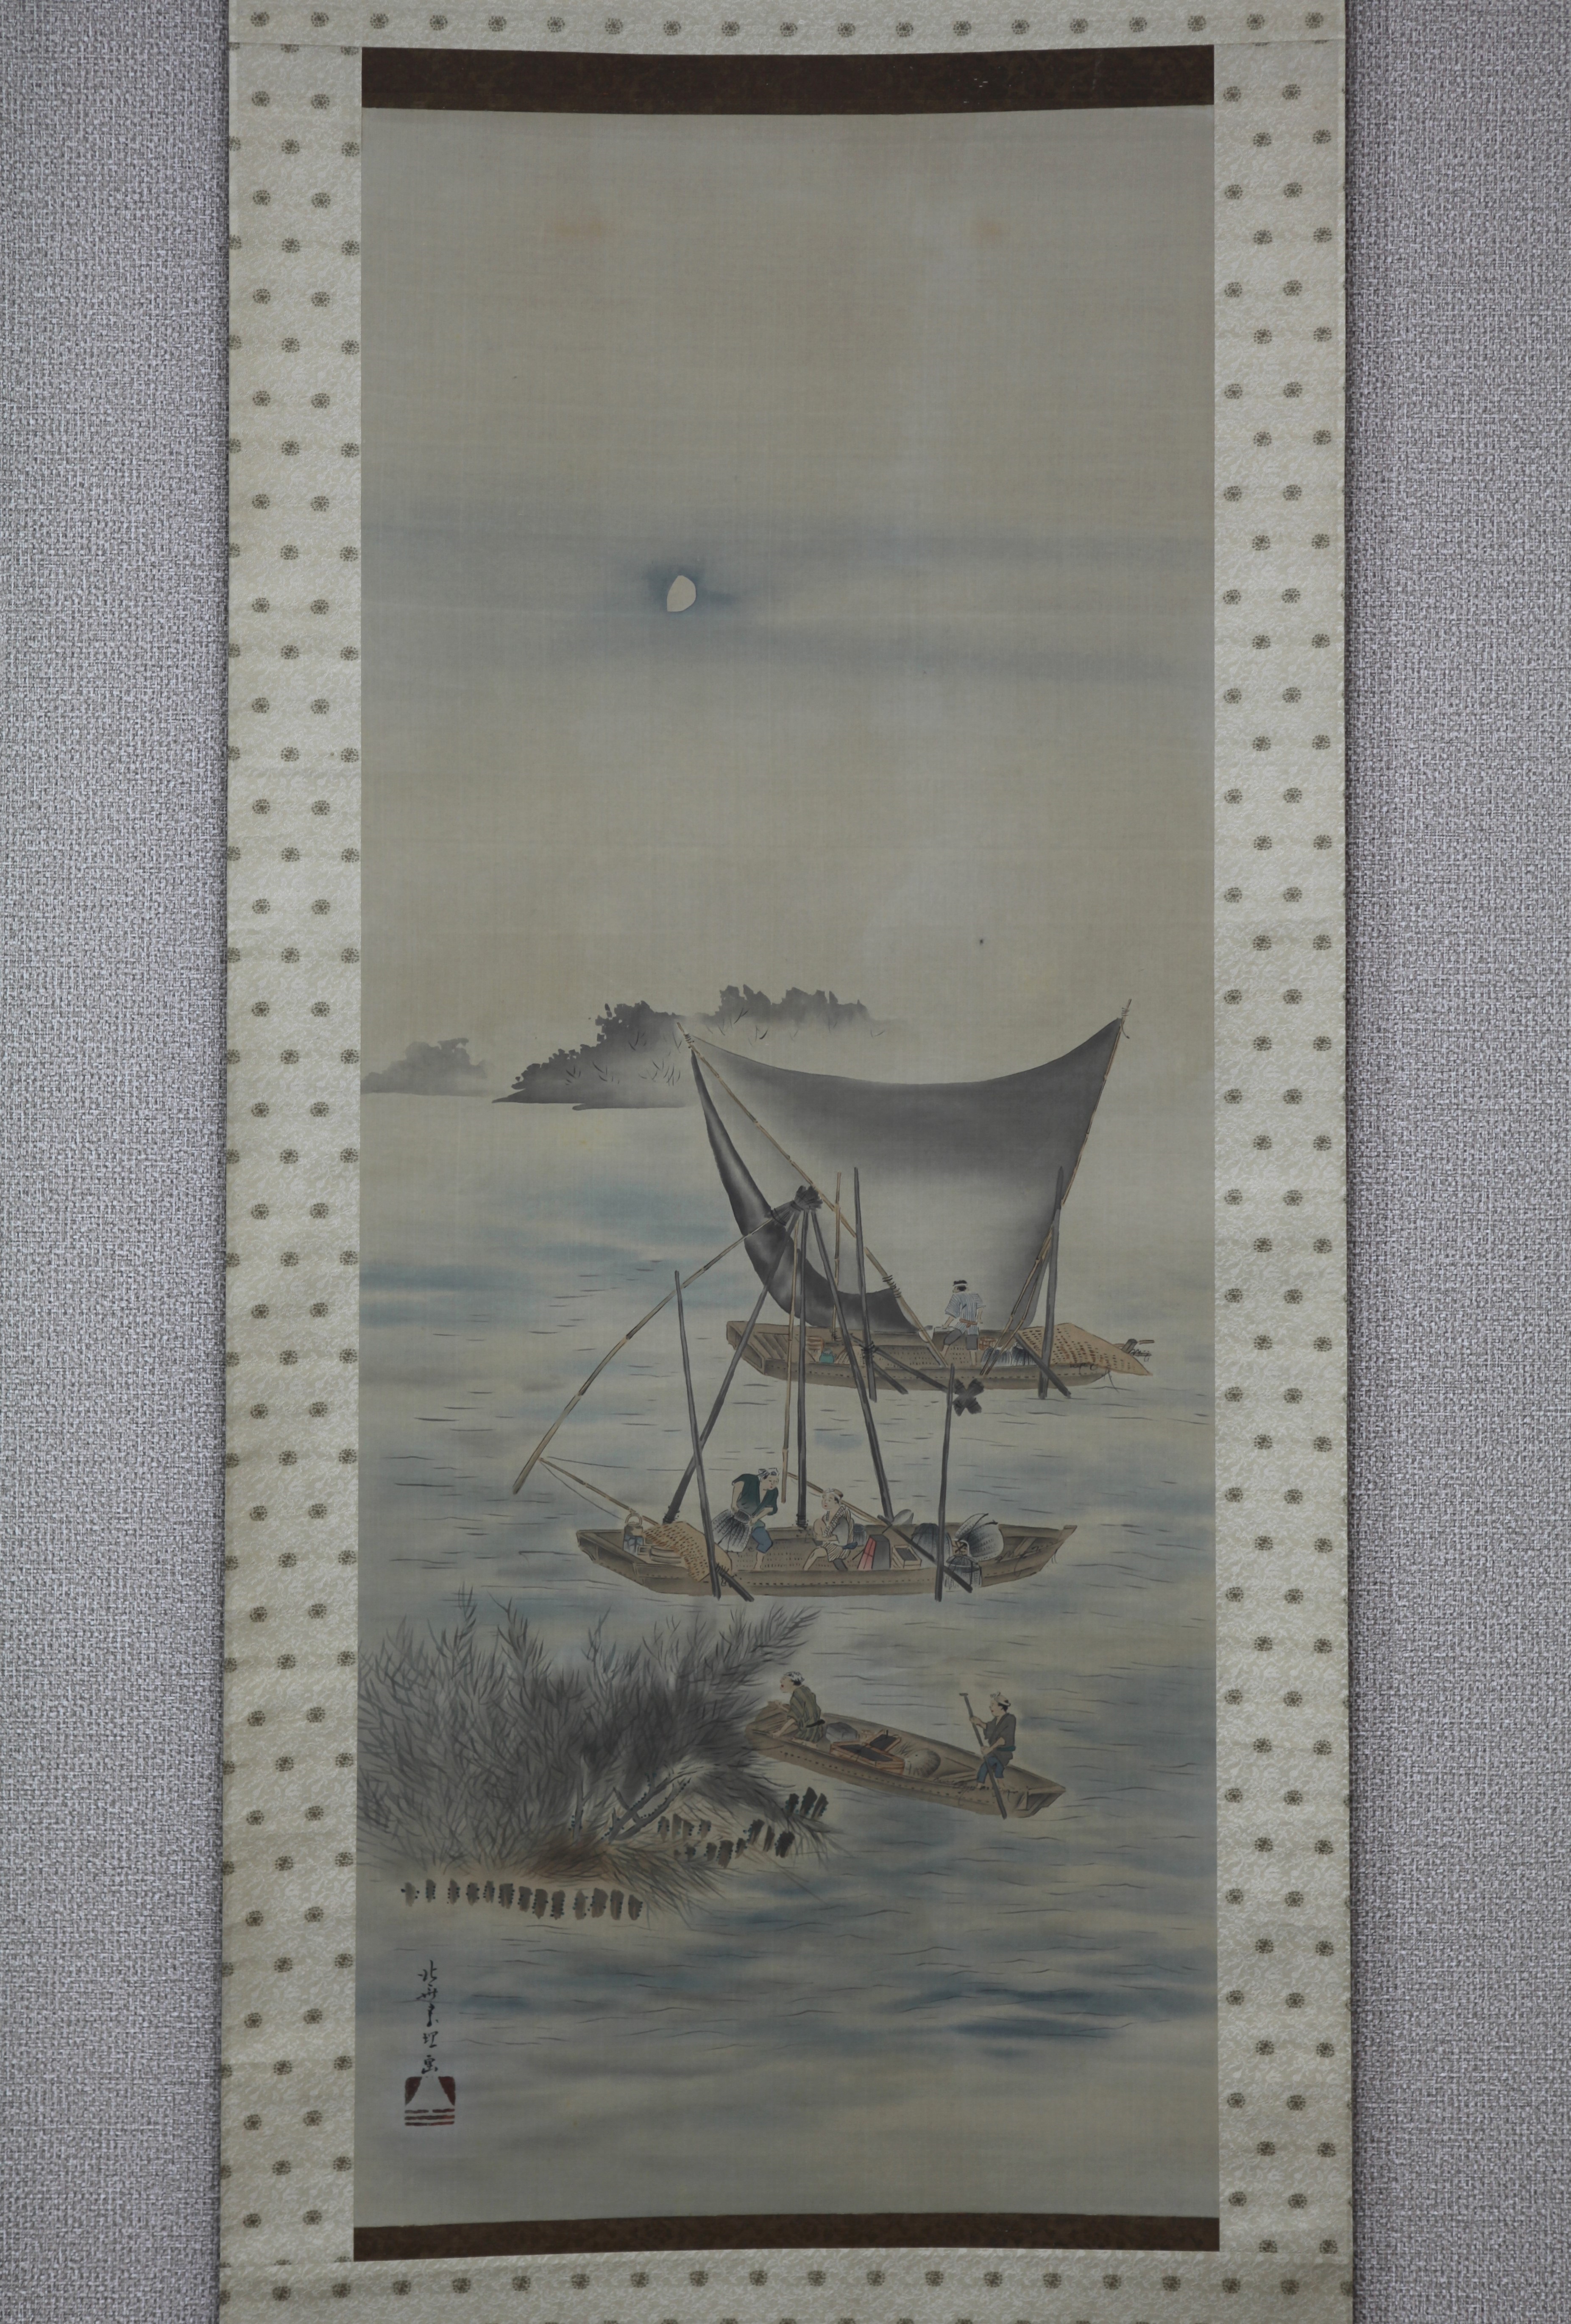 模写 江戸時代 勝川春章 美人画 肉筆 絹本 掛け軸 浮世絵師 純正ストア